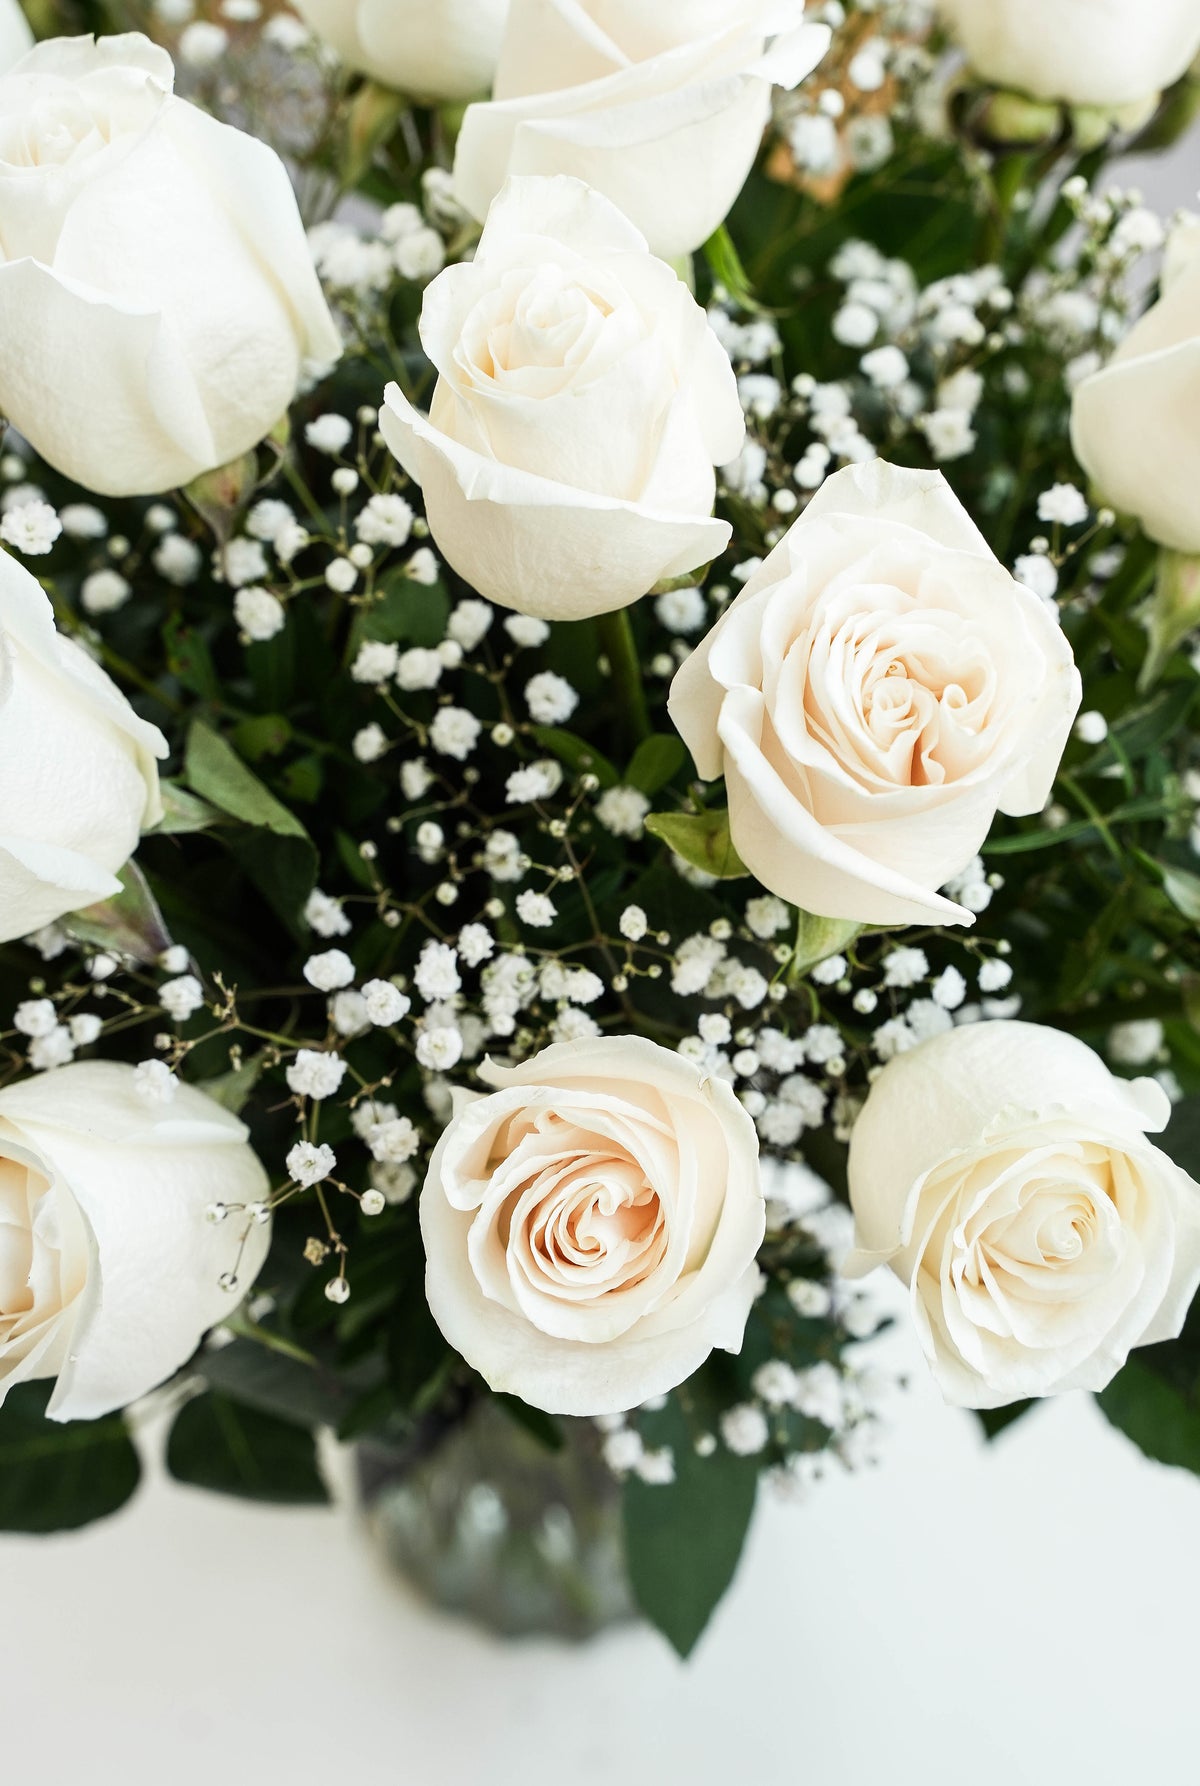 24 Long Stem White Roses in a vase